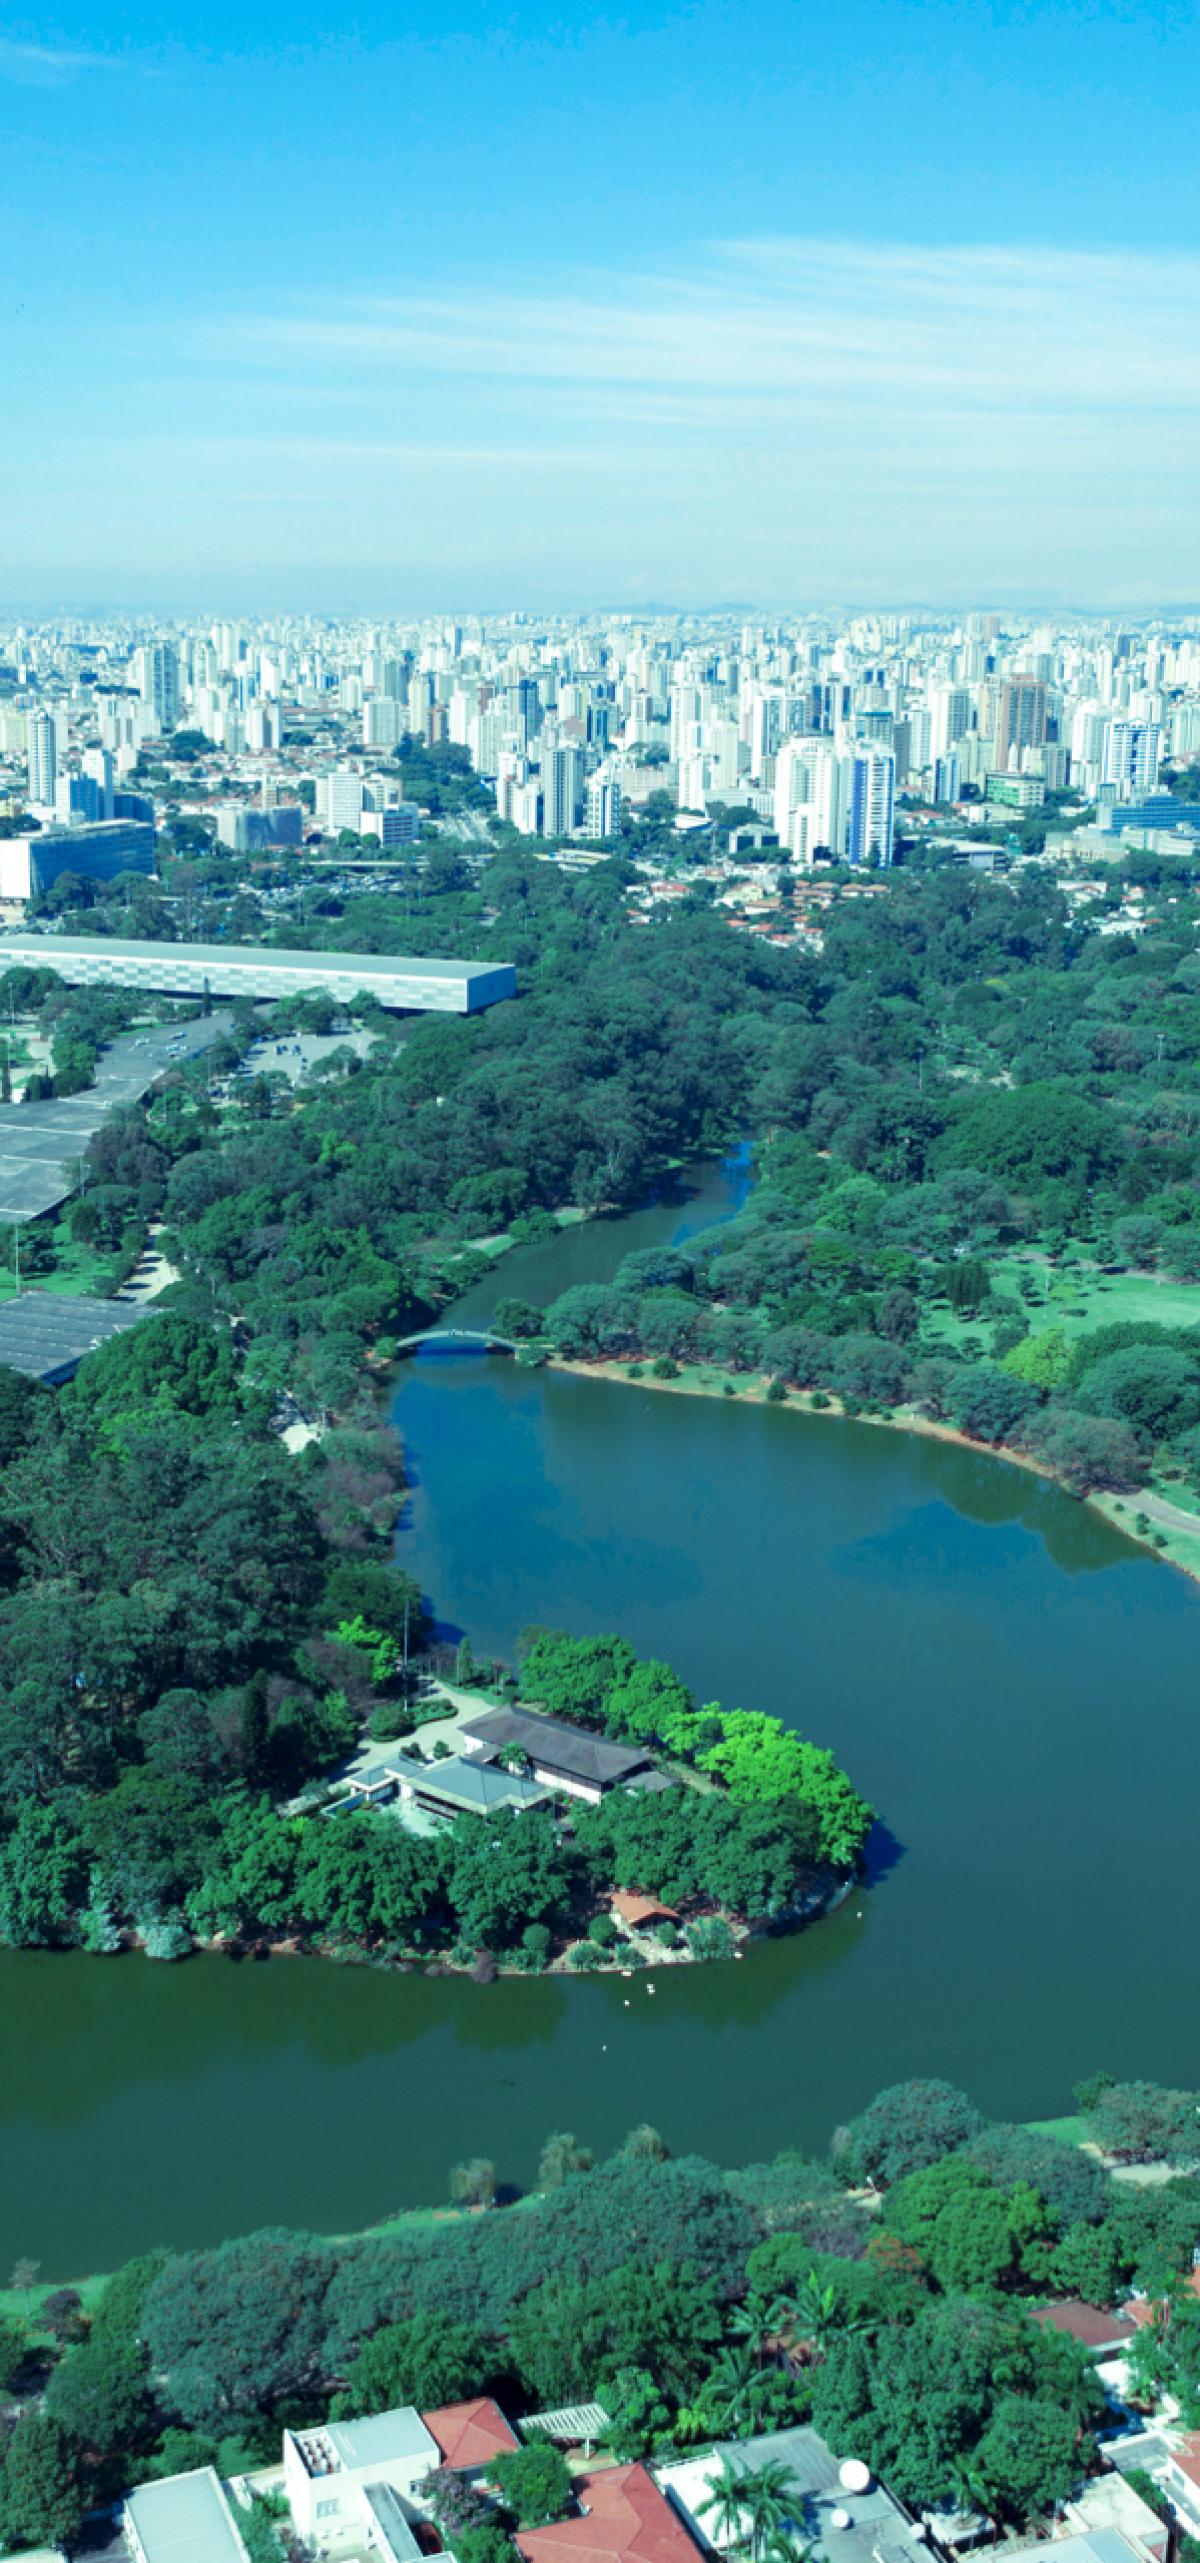 Größter und ältester Stadtpark São Paulos: Parque do Ibirapuera